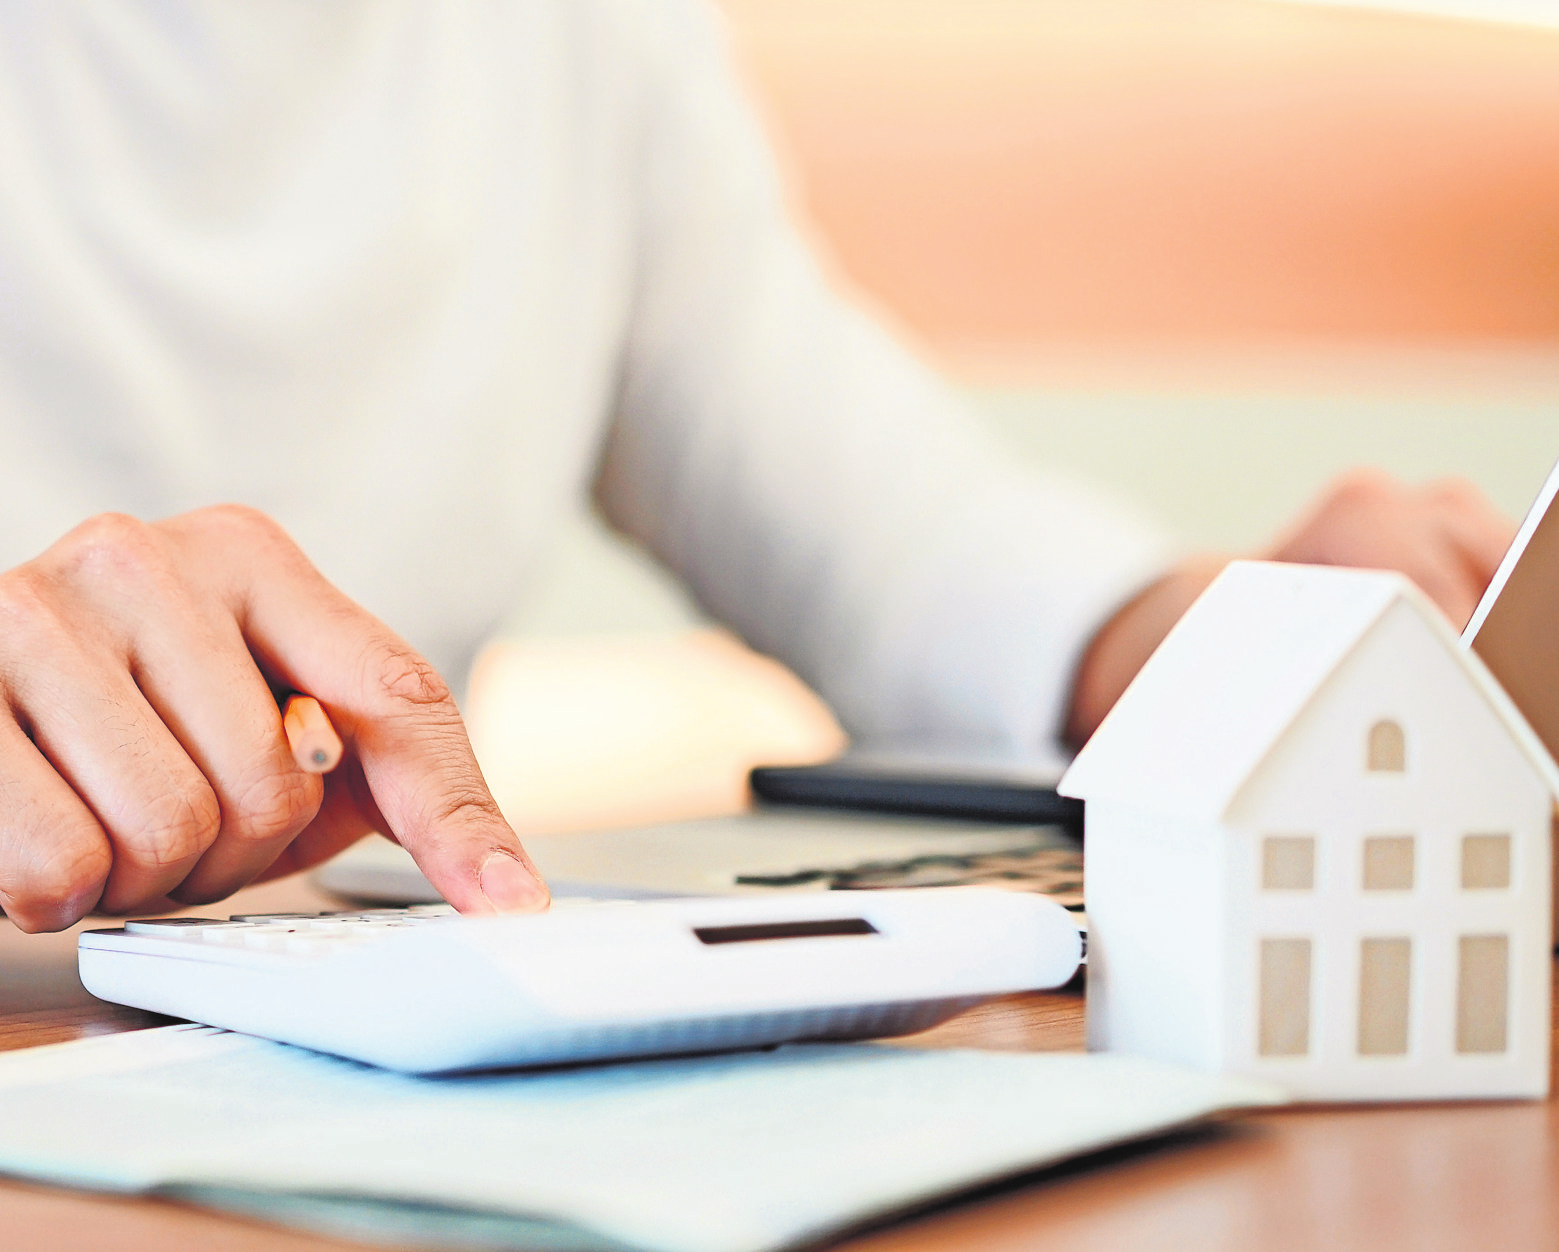 Bei den aktuellen Zinsen und Baupreisen ist es vielen nicht möglich, ihren Immobilientraum zu verwirklichen und damit ein Eigenheim zu finanzieren.  Foto: Adobe Stock